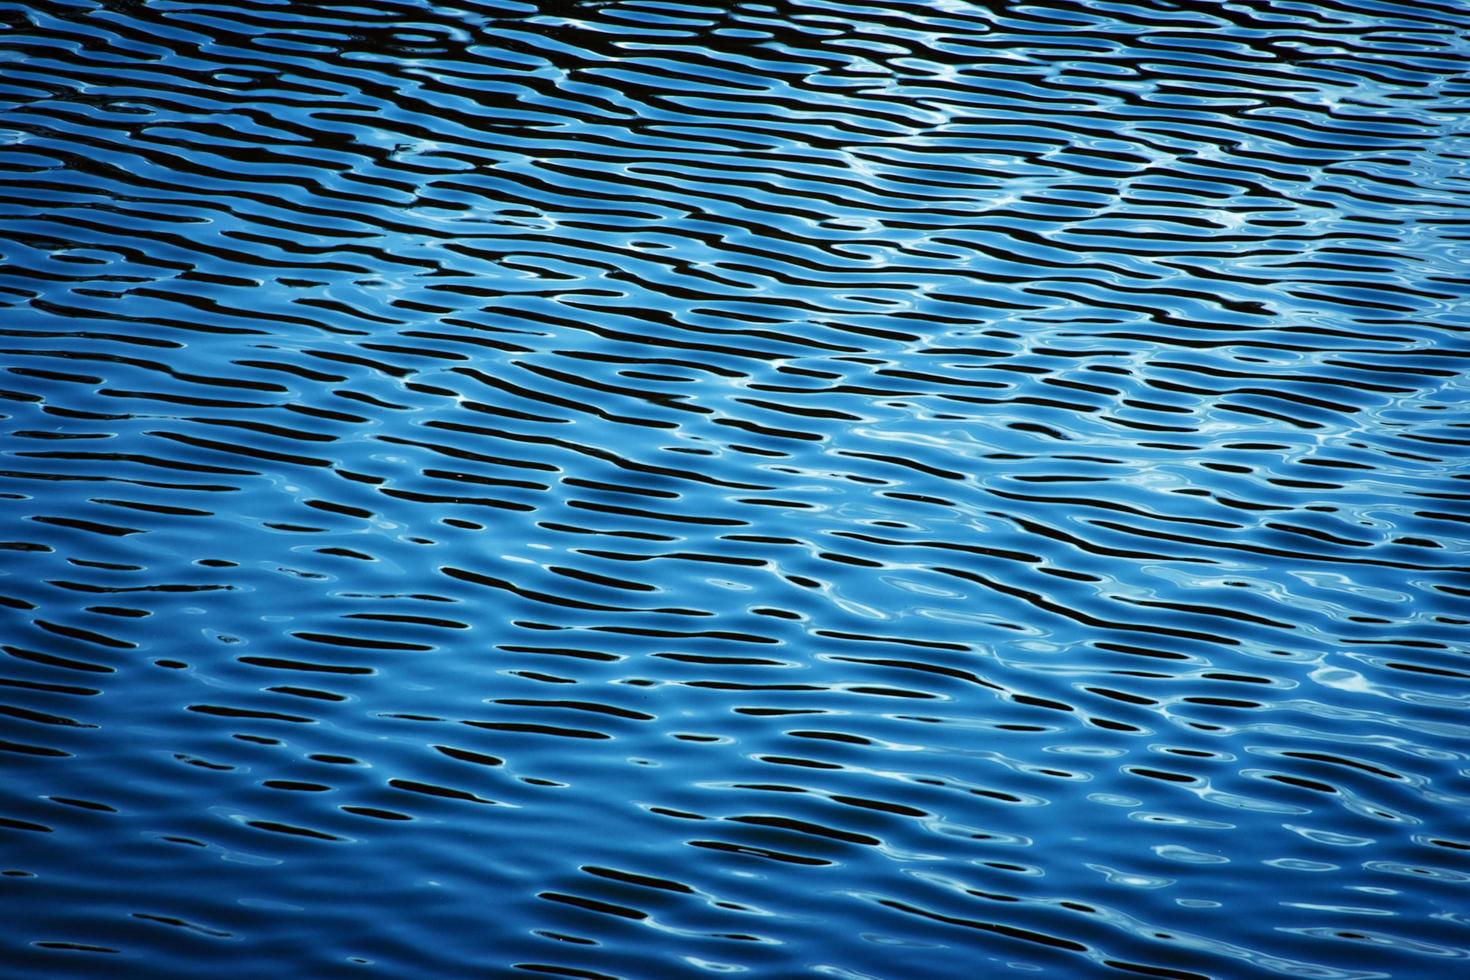 superfície ondulada da água azul foto